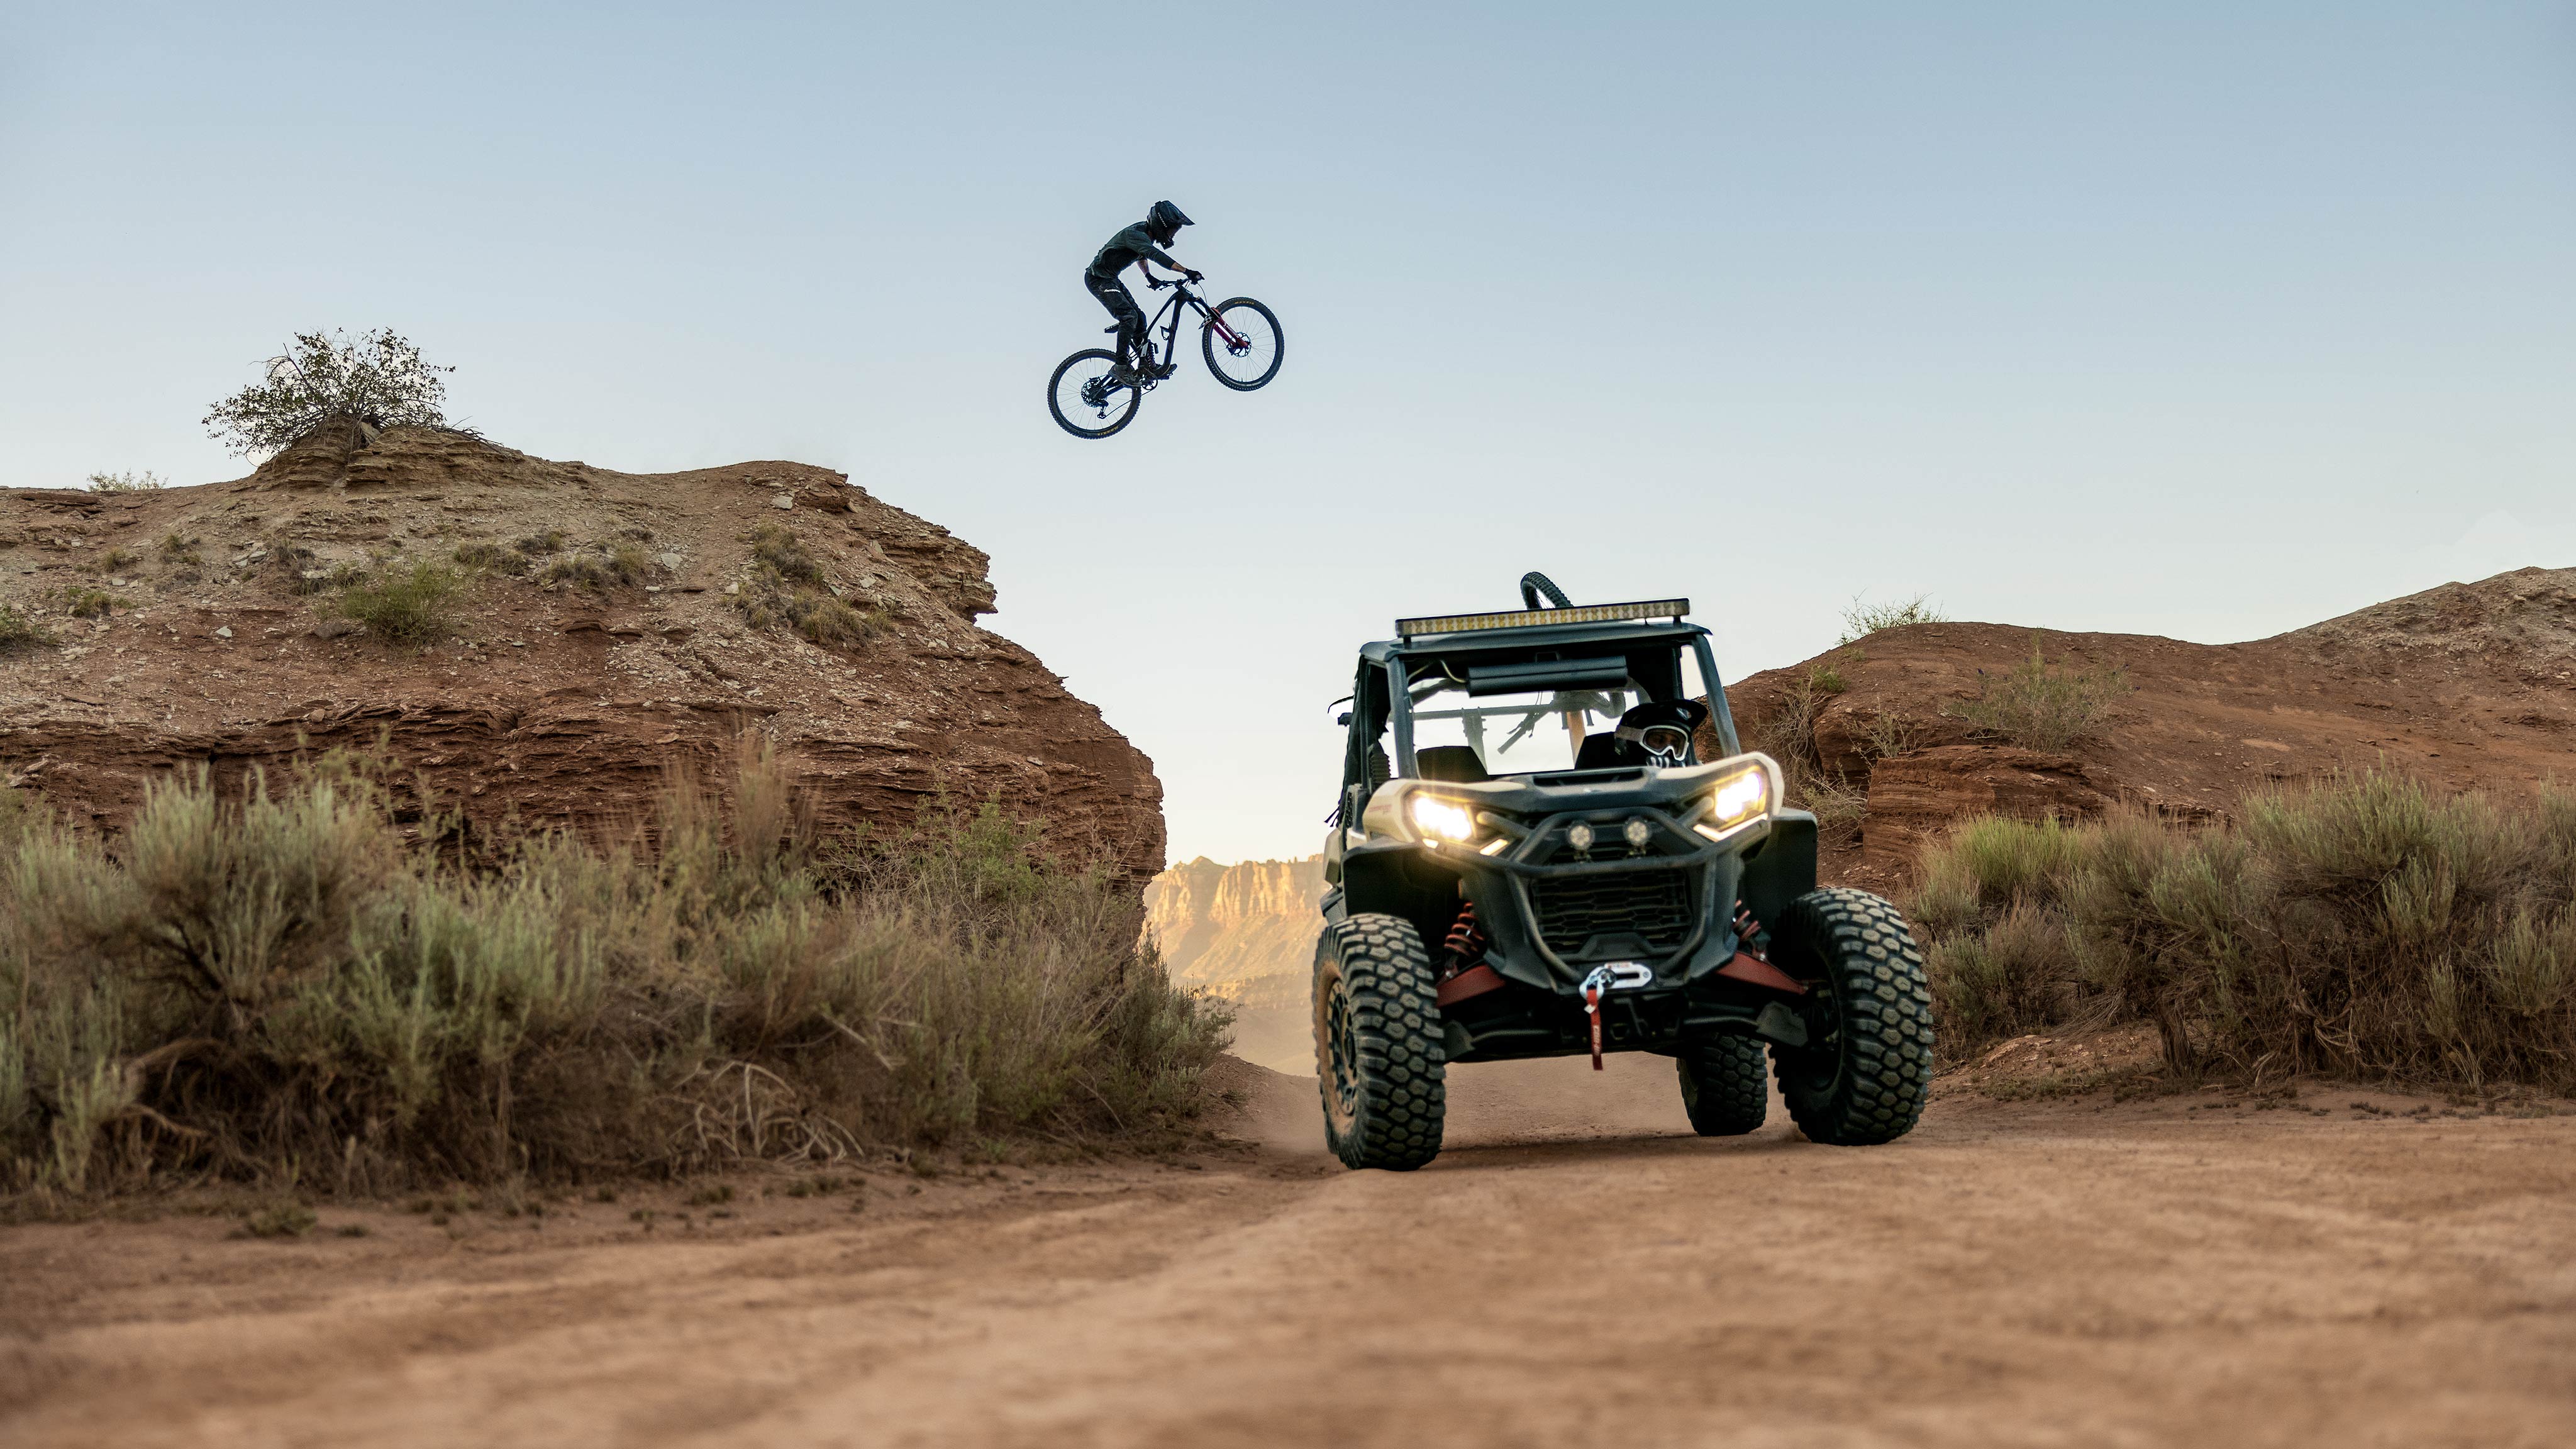 A mountain biker jumping over a Desert Tan & Carbon Black Can-Am Commander XT-P